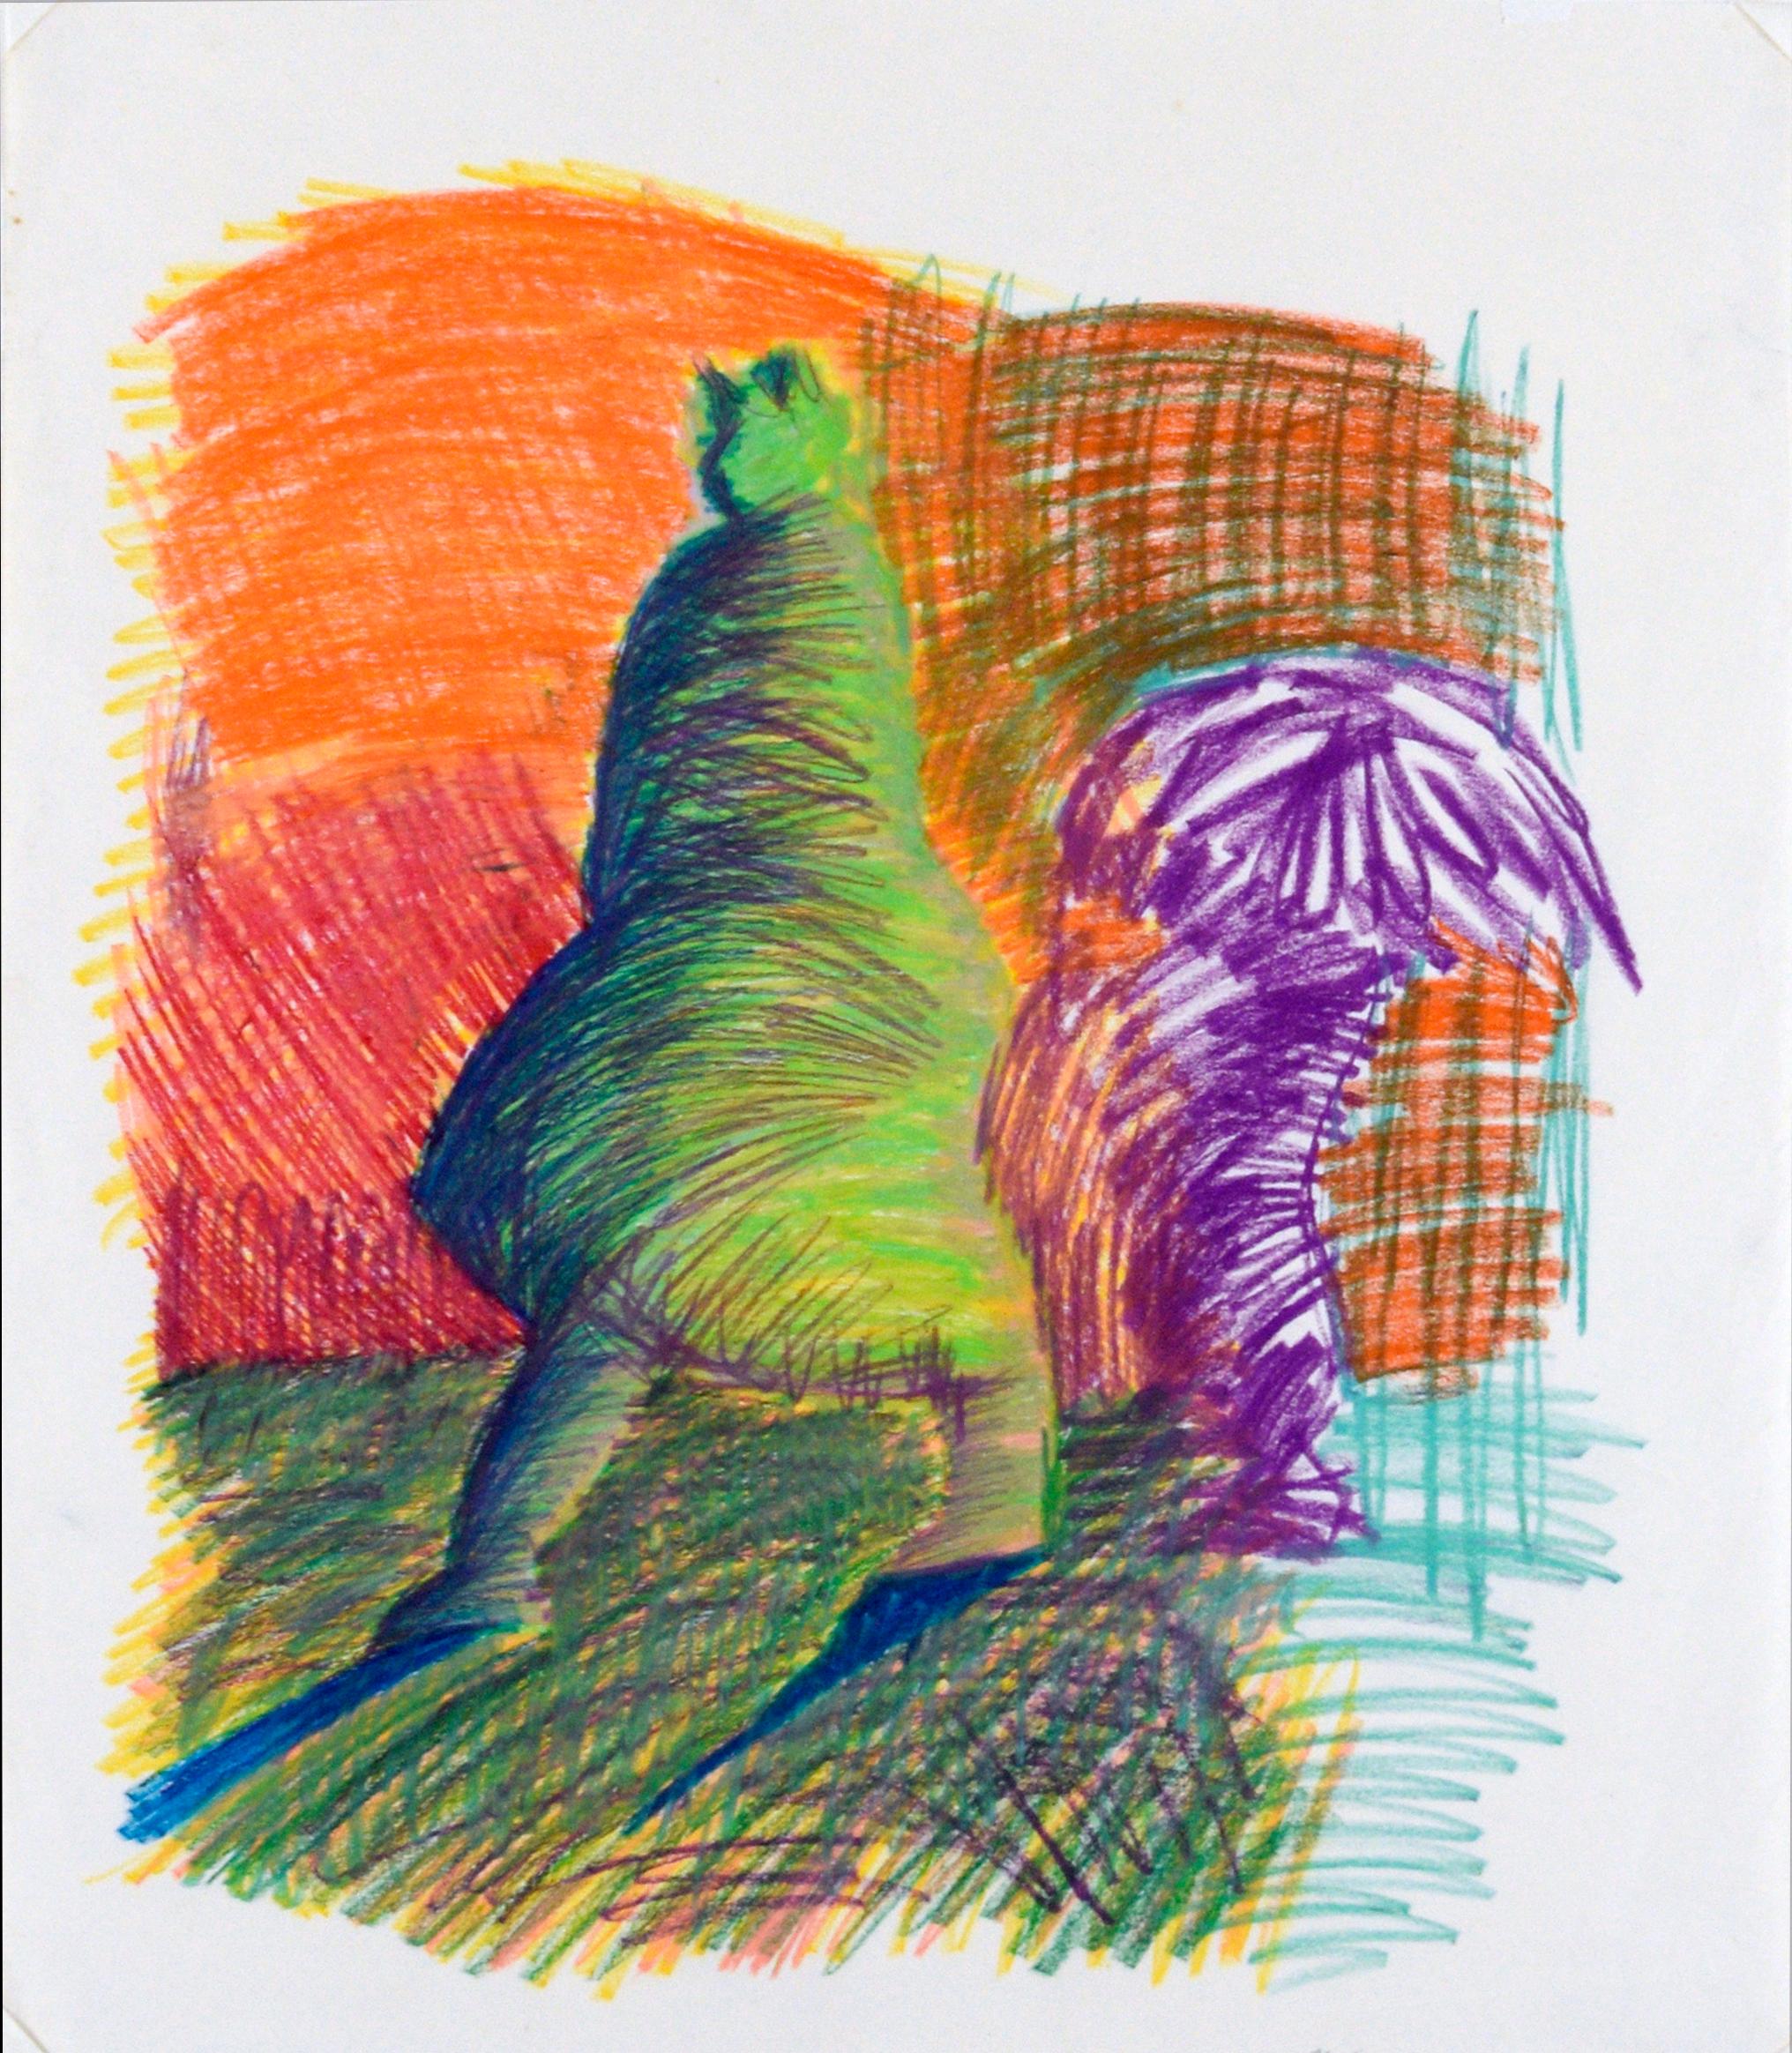 Femme abstraite dans l'ombre au pastel sur papier

Dessin abstrait aux couleurs vives de Michael William Eggleston (américain, 20e siècle). Une femme abstraite est représentée marchant avec une lumière illuminant son dos et une deuxième figure sous